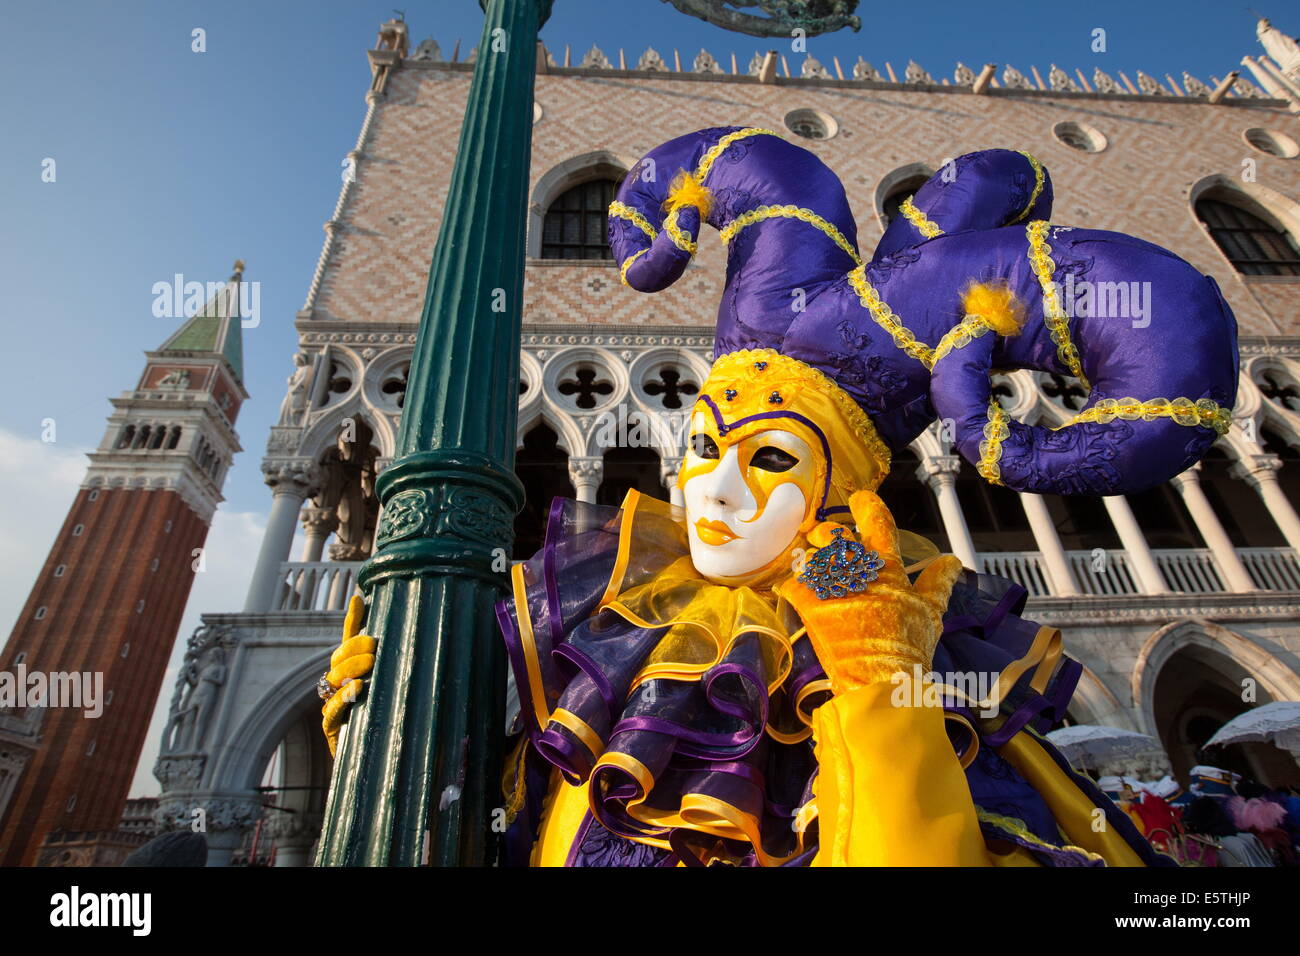 Masques et costumes du Carnaval de Venise durant le carnaval, la Place Saint Marc, Venise, Vénétie, Italie, Europe Banque D'Images